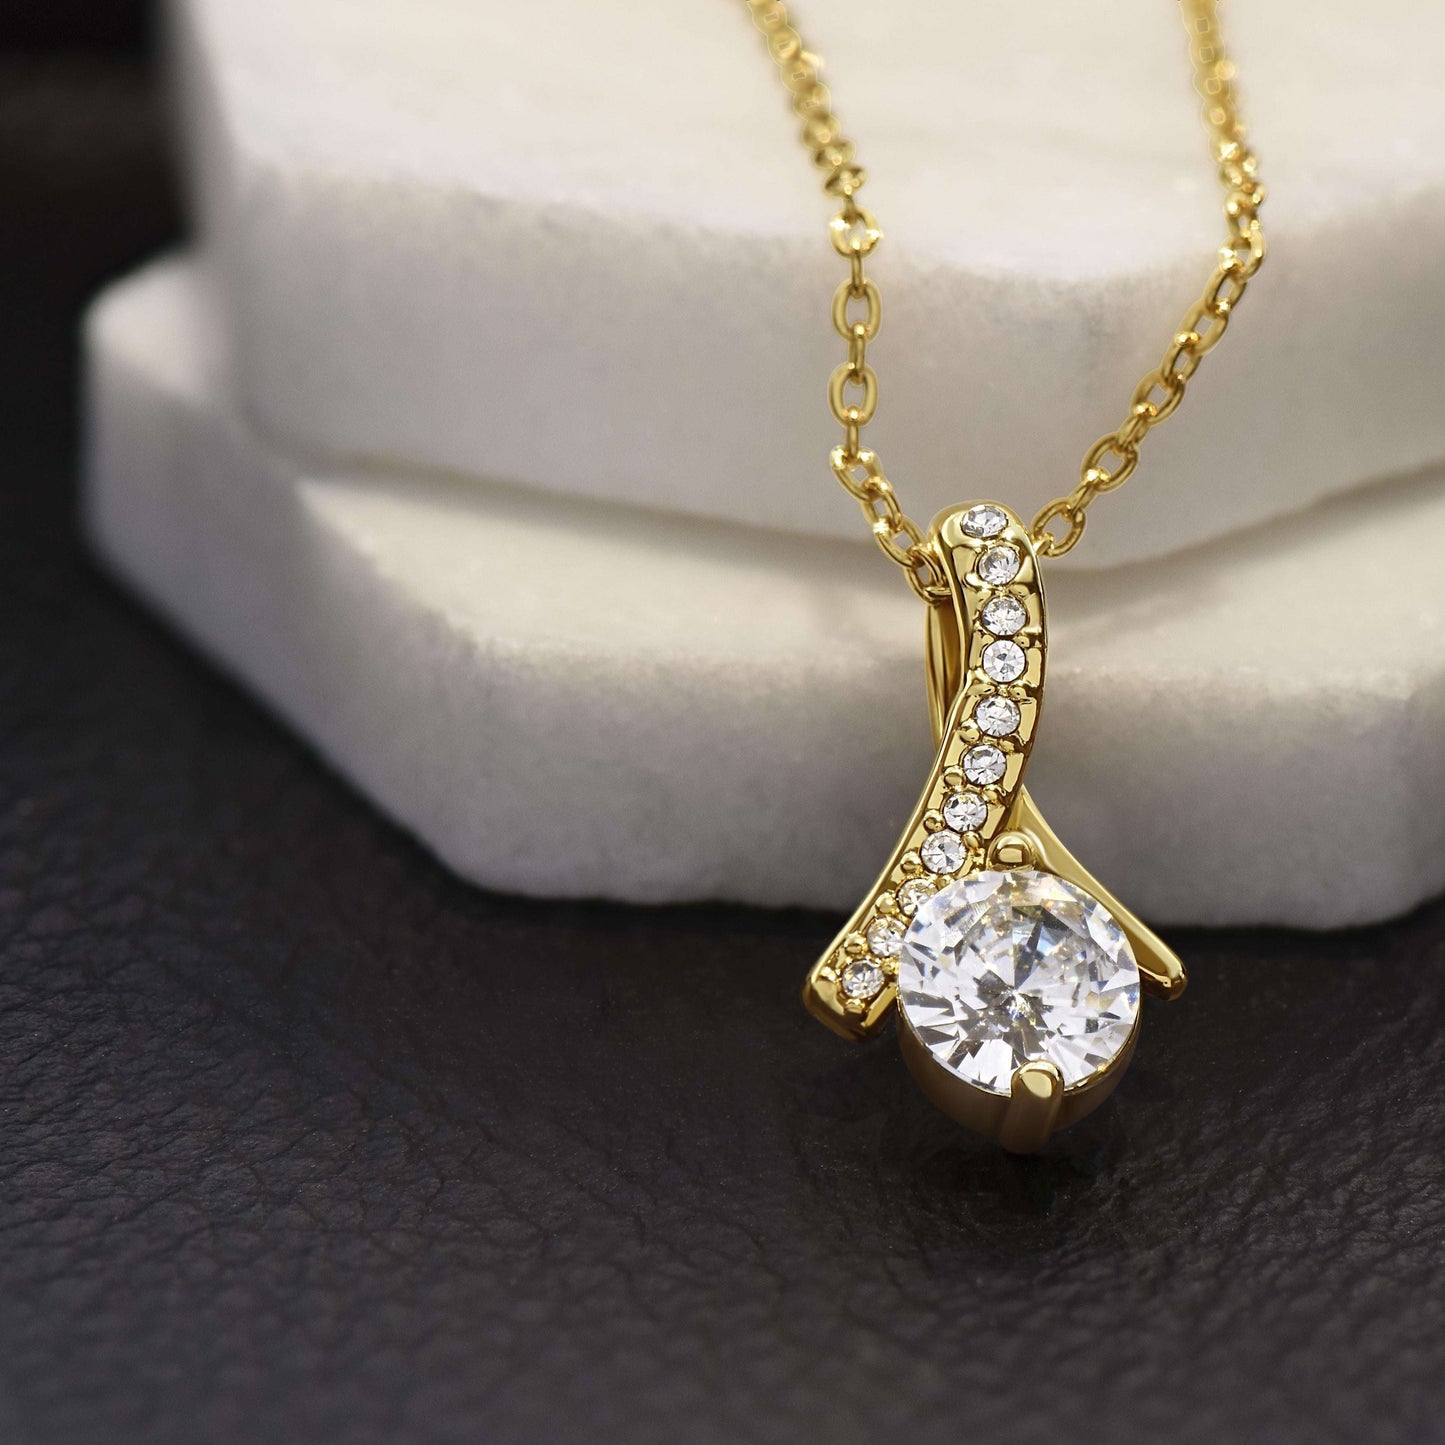 Friend Necklace, Sending You A Big Hug “ Alluring Beauty Necklace Gifts For Friend Rakva